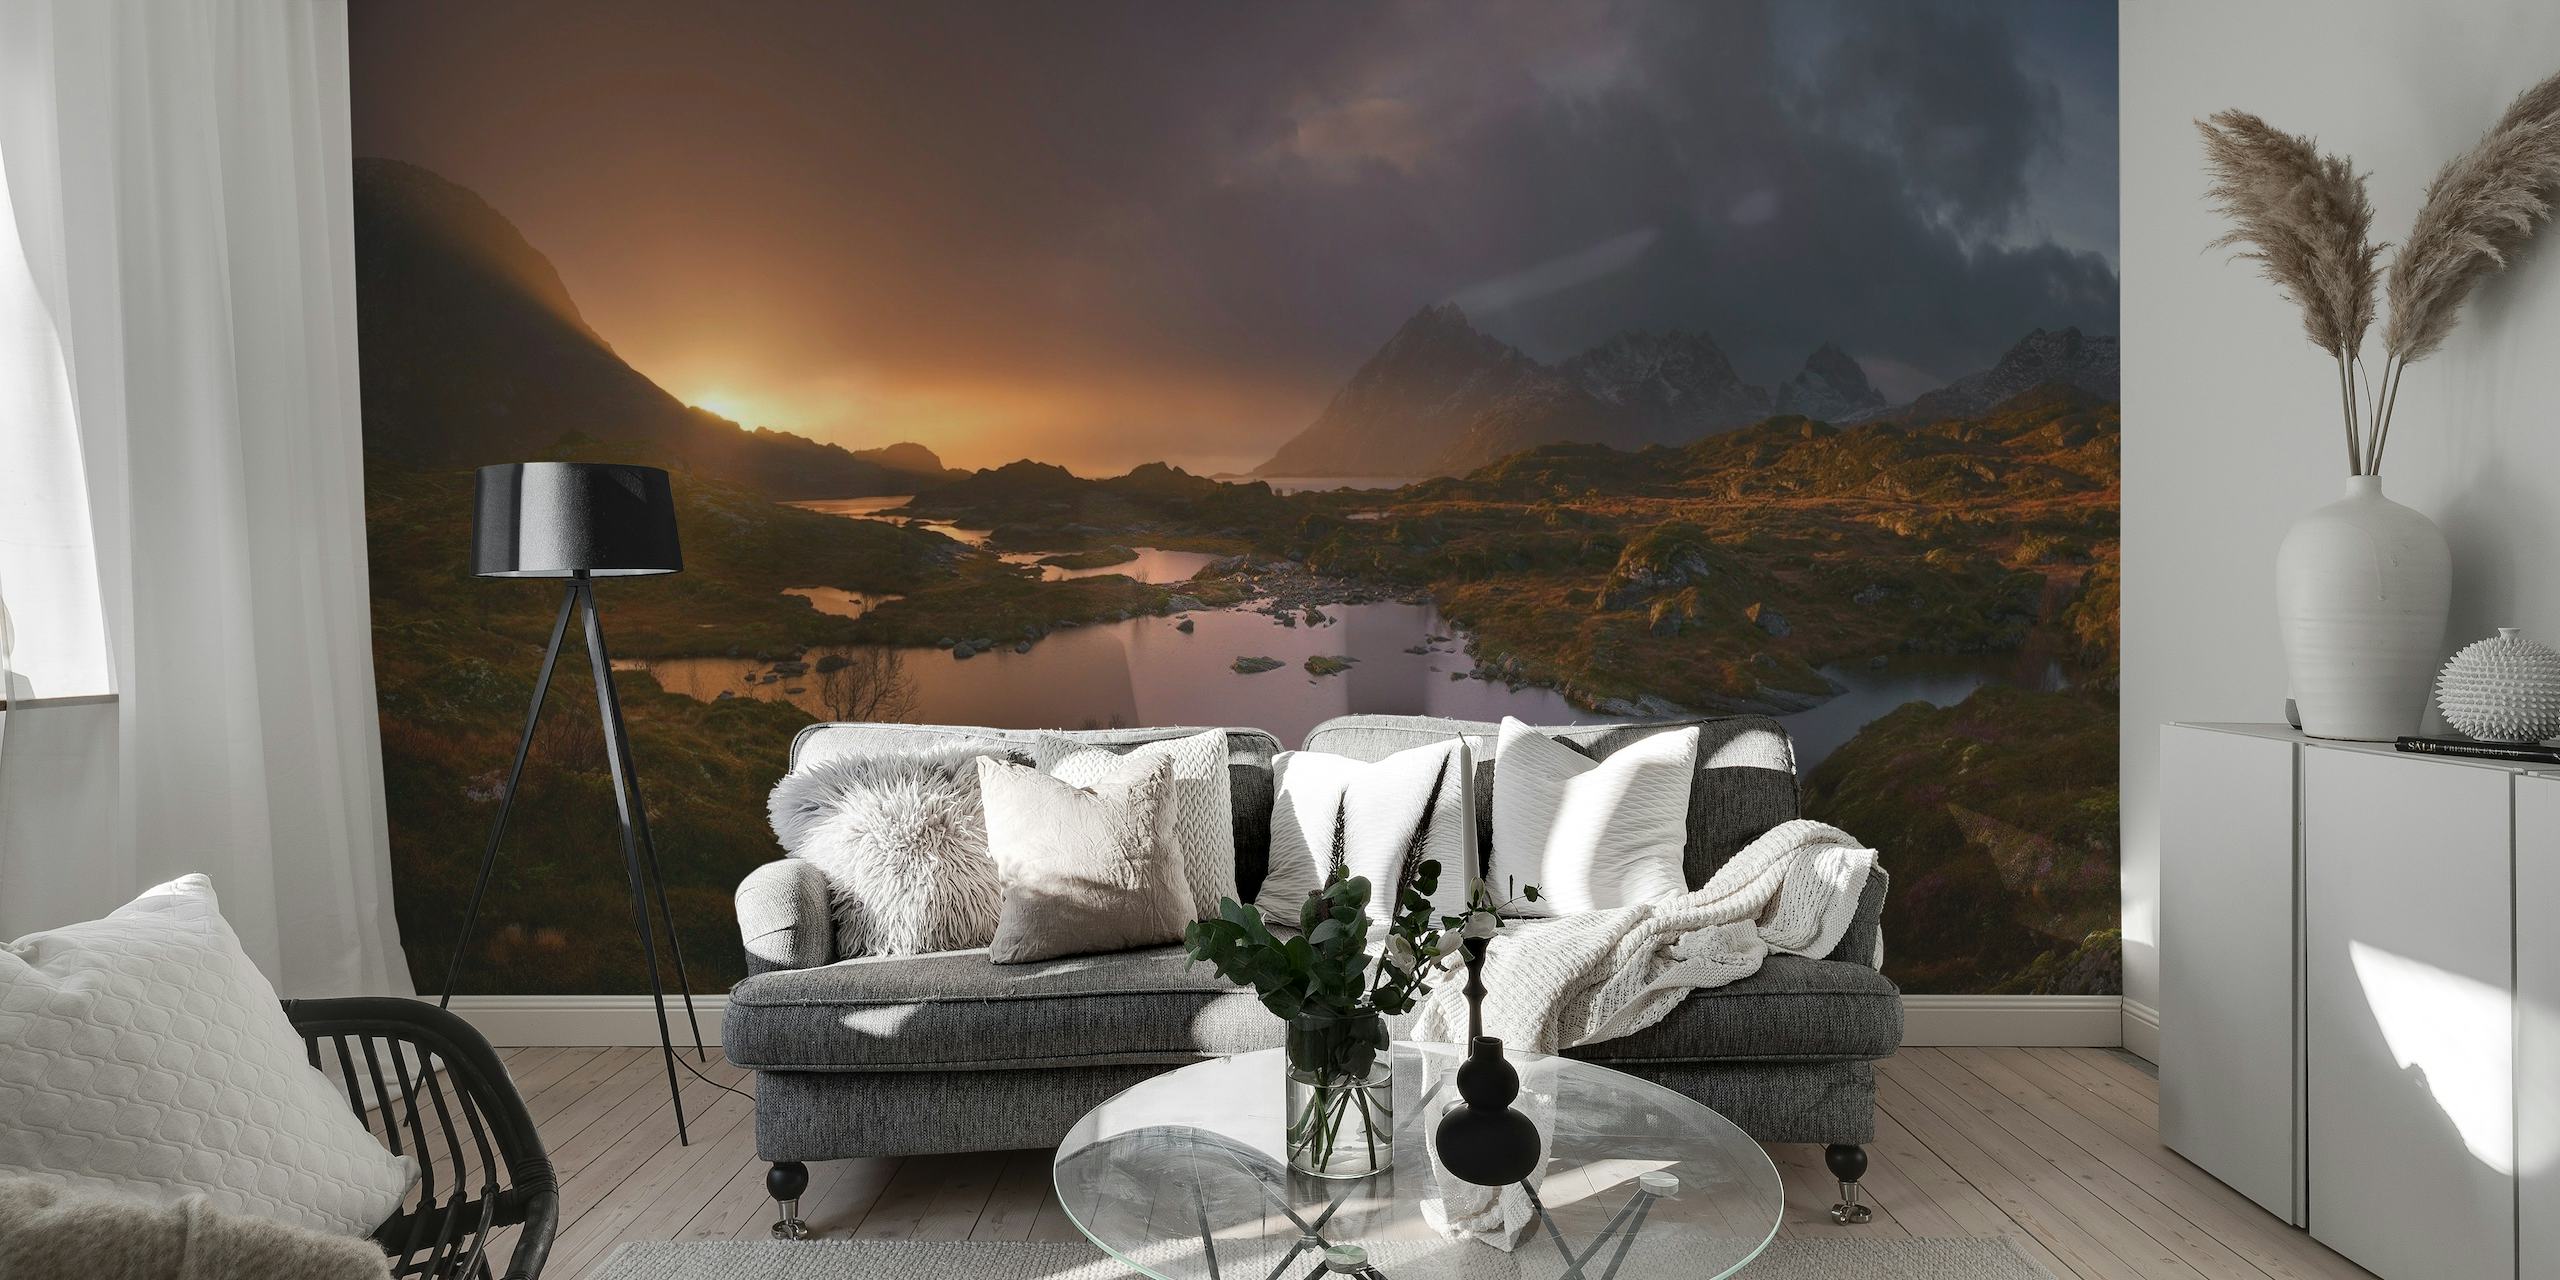 Soloppgang over Lofoten fototapet som viser det rolige morgenlyset på norsk landskap med fjell og innsjøer.